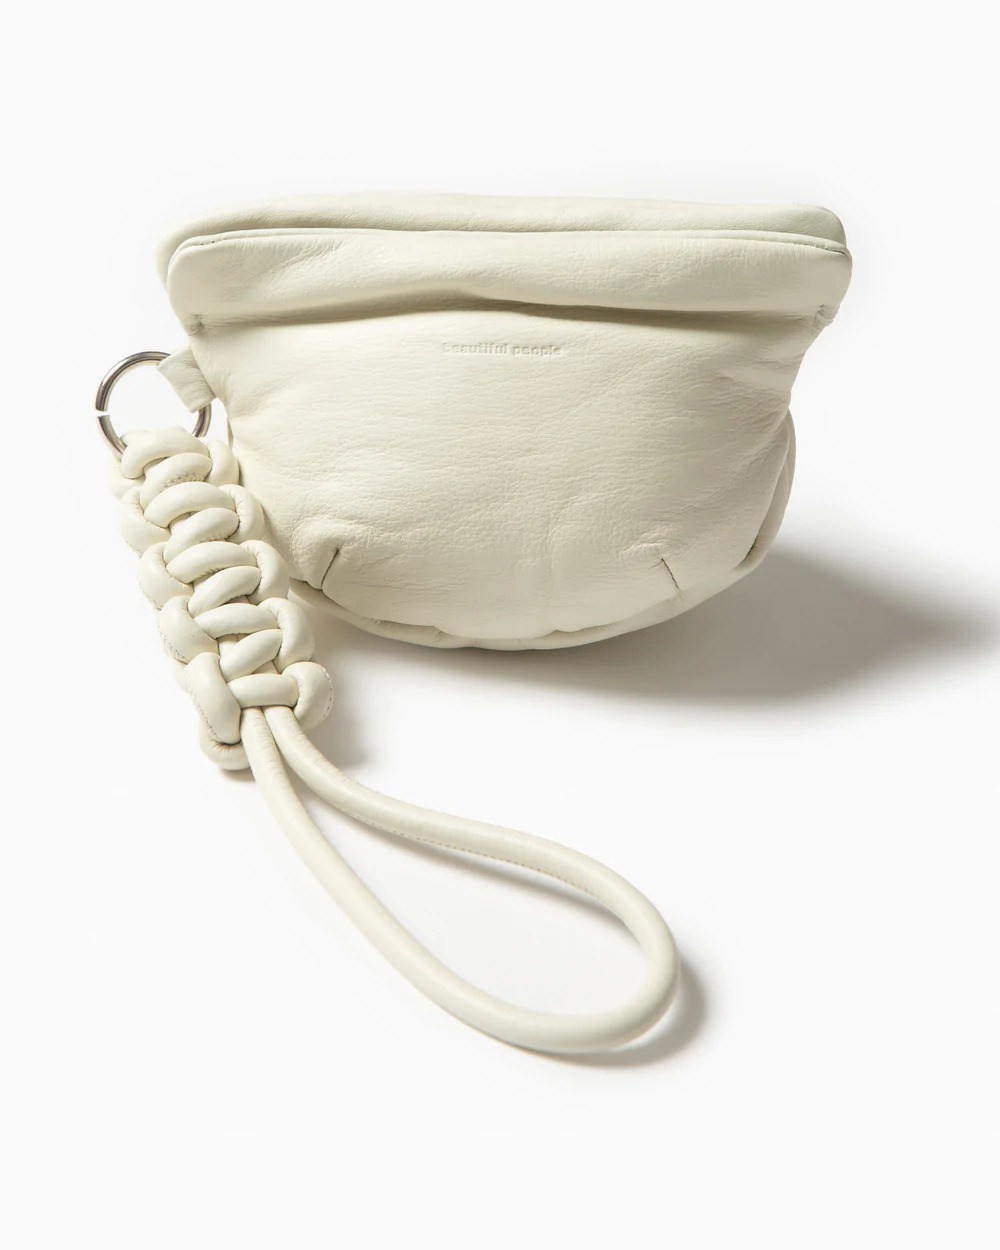 ビューティフルピープルのホワイトのバッグ